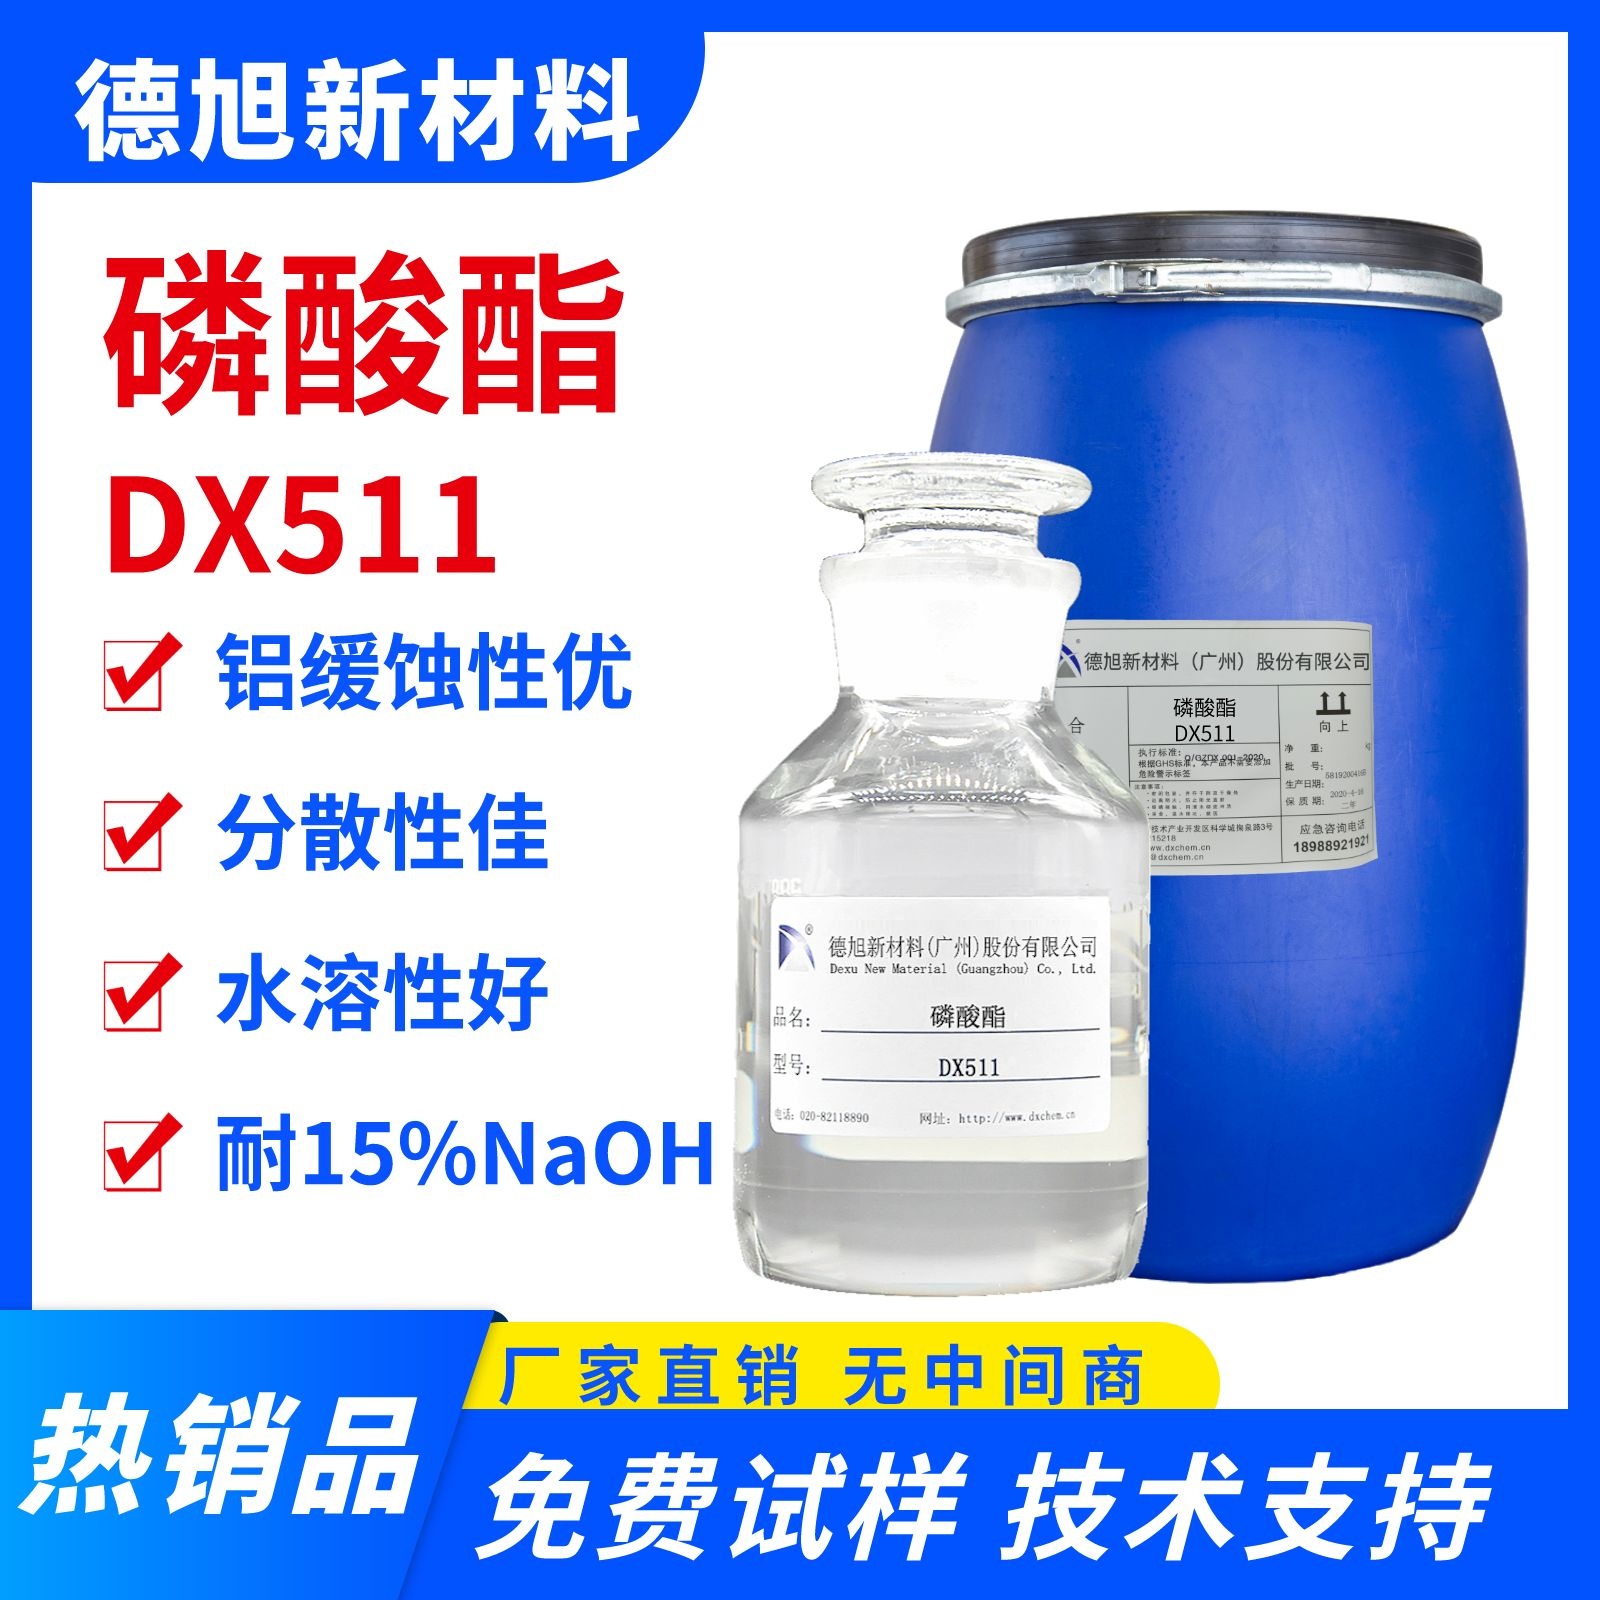 磷酸酯 DX511 水溶性铝材缓蚀剂 抗硬水磷酸酯缓蚀剂图片